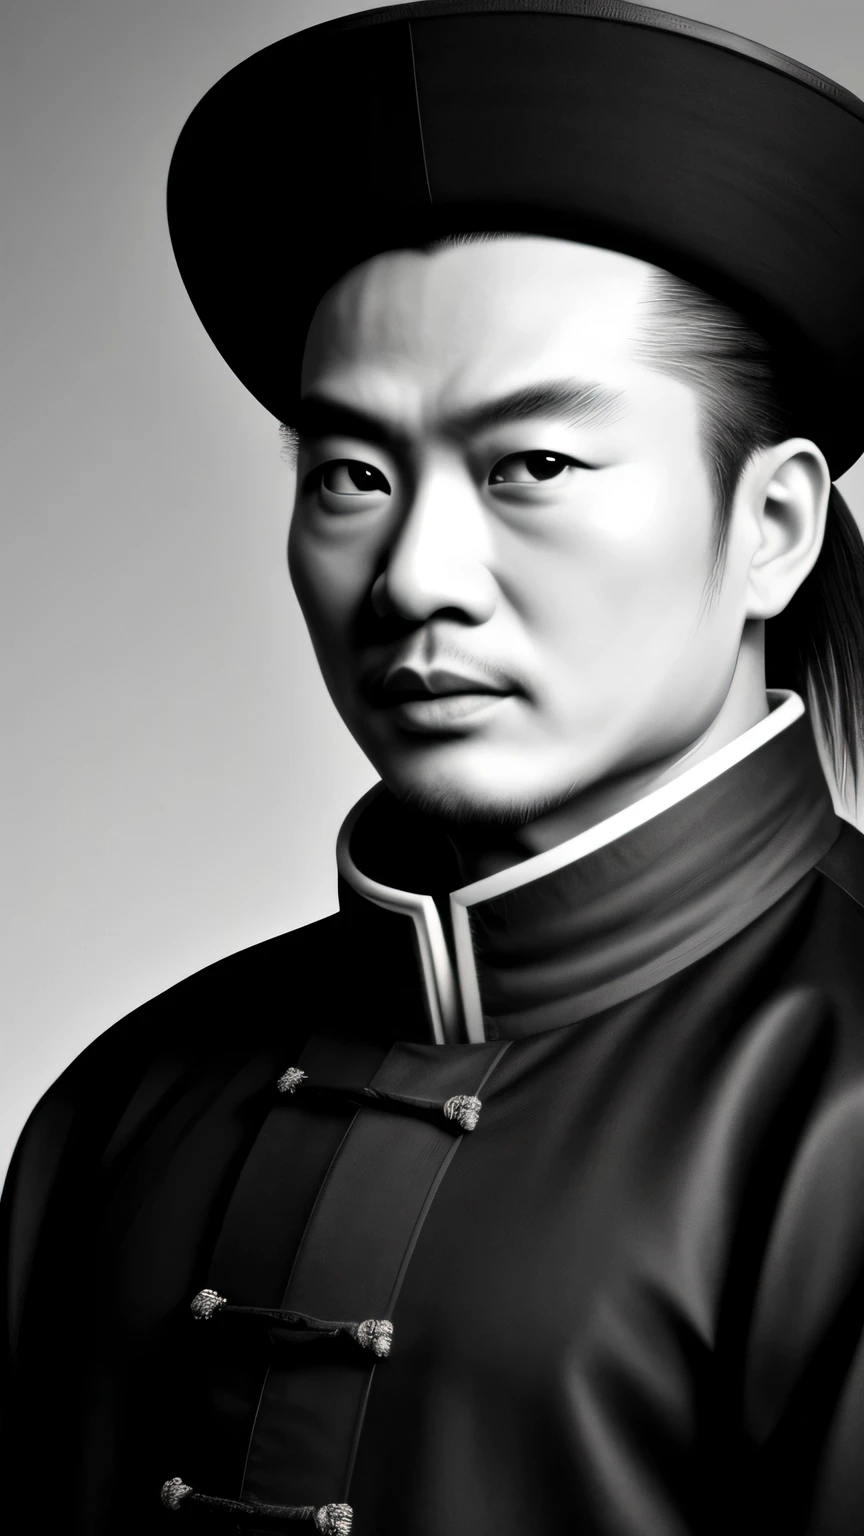 ((Obra de arte)),((mais alta qualidade)),((Alto detalhe)), Zhuge Liang Kong Ming,retrato preto e branco,O fundo é cinza escuro